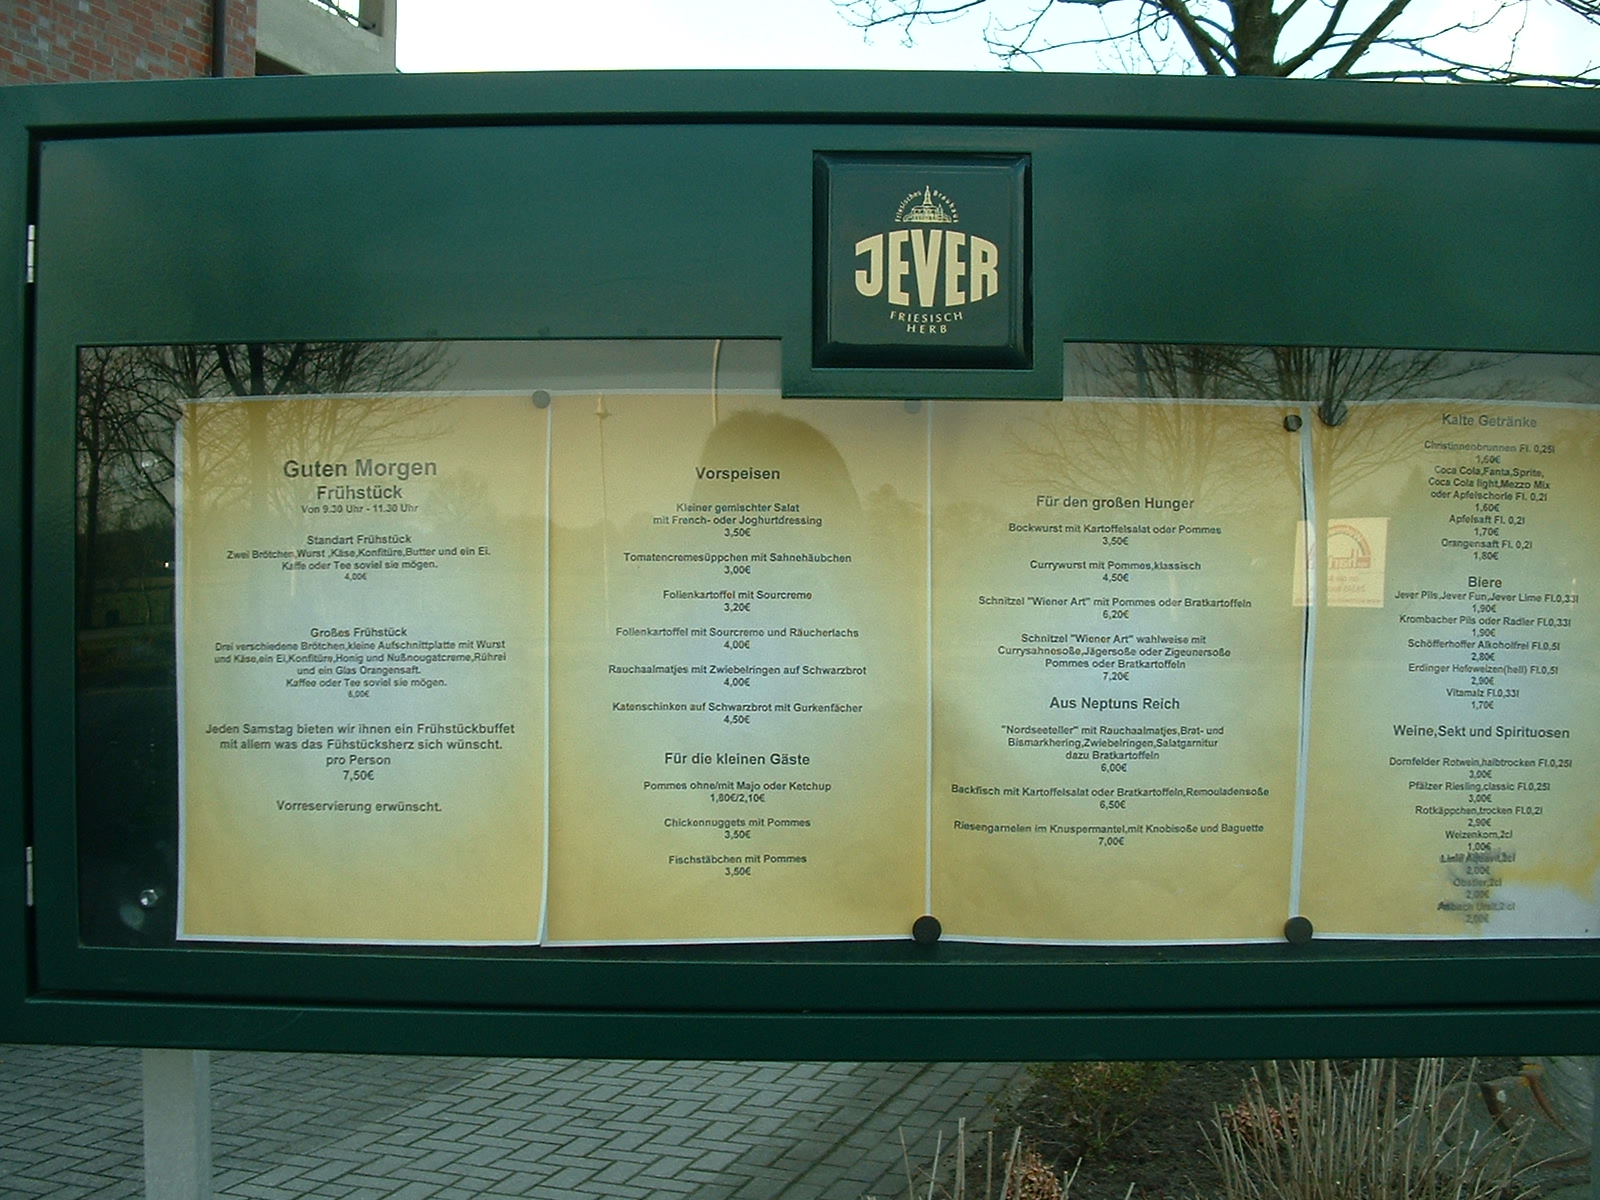 Restaurant Speisekarte der Wohnwelt von Harten in Bockhorn - Jadebusen. Preiswerte Angebote an Frühstück und anderen Speisen